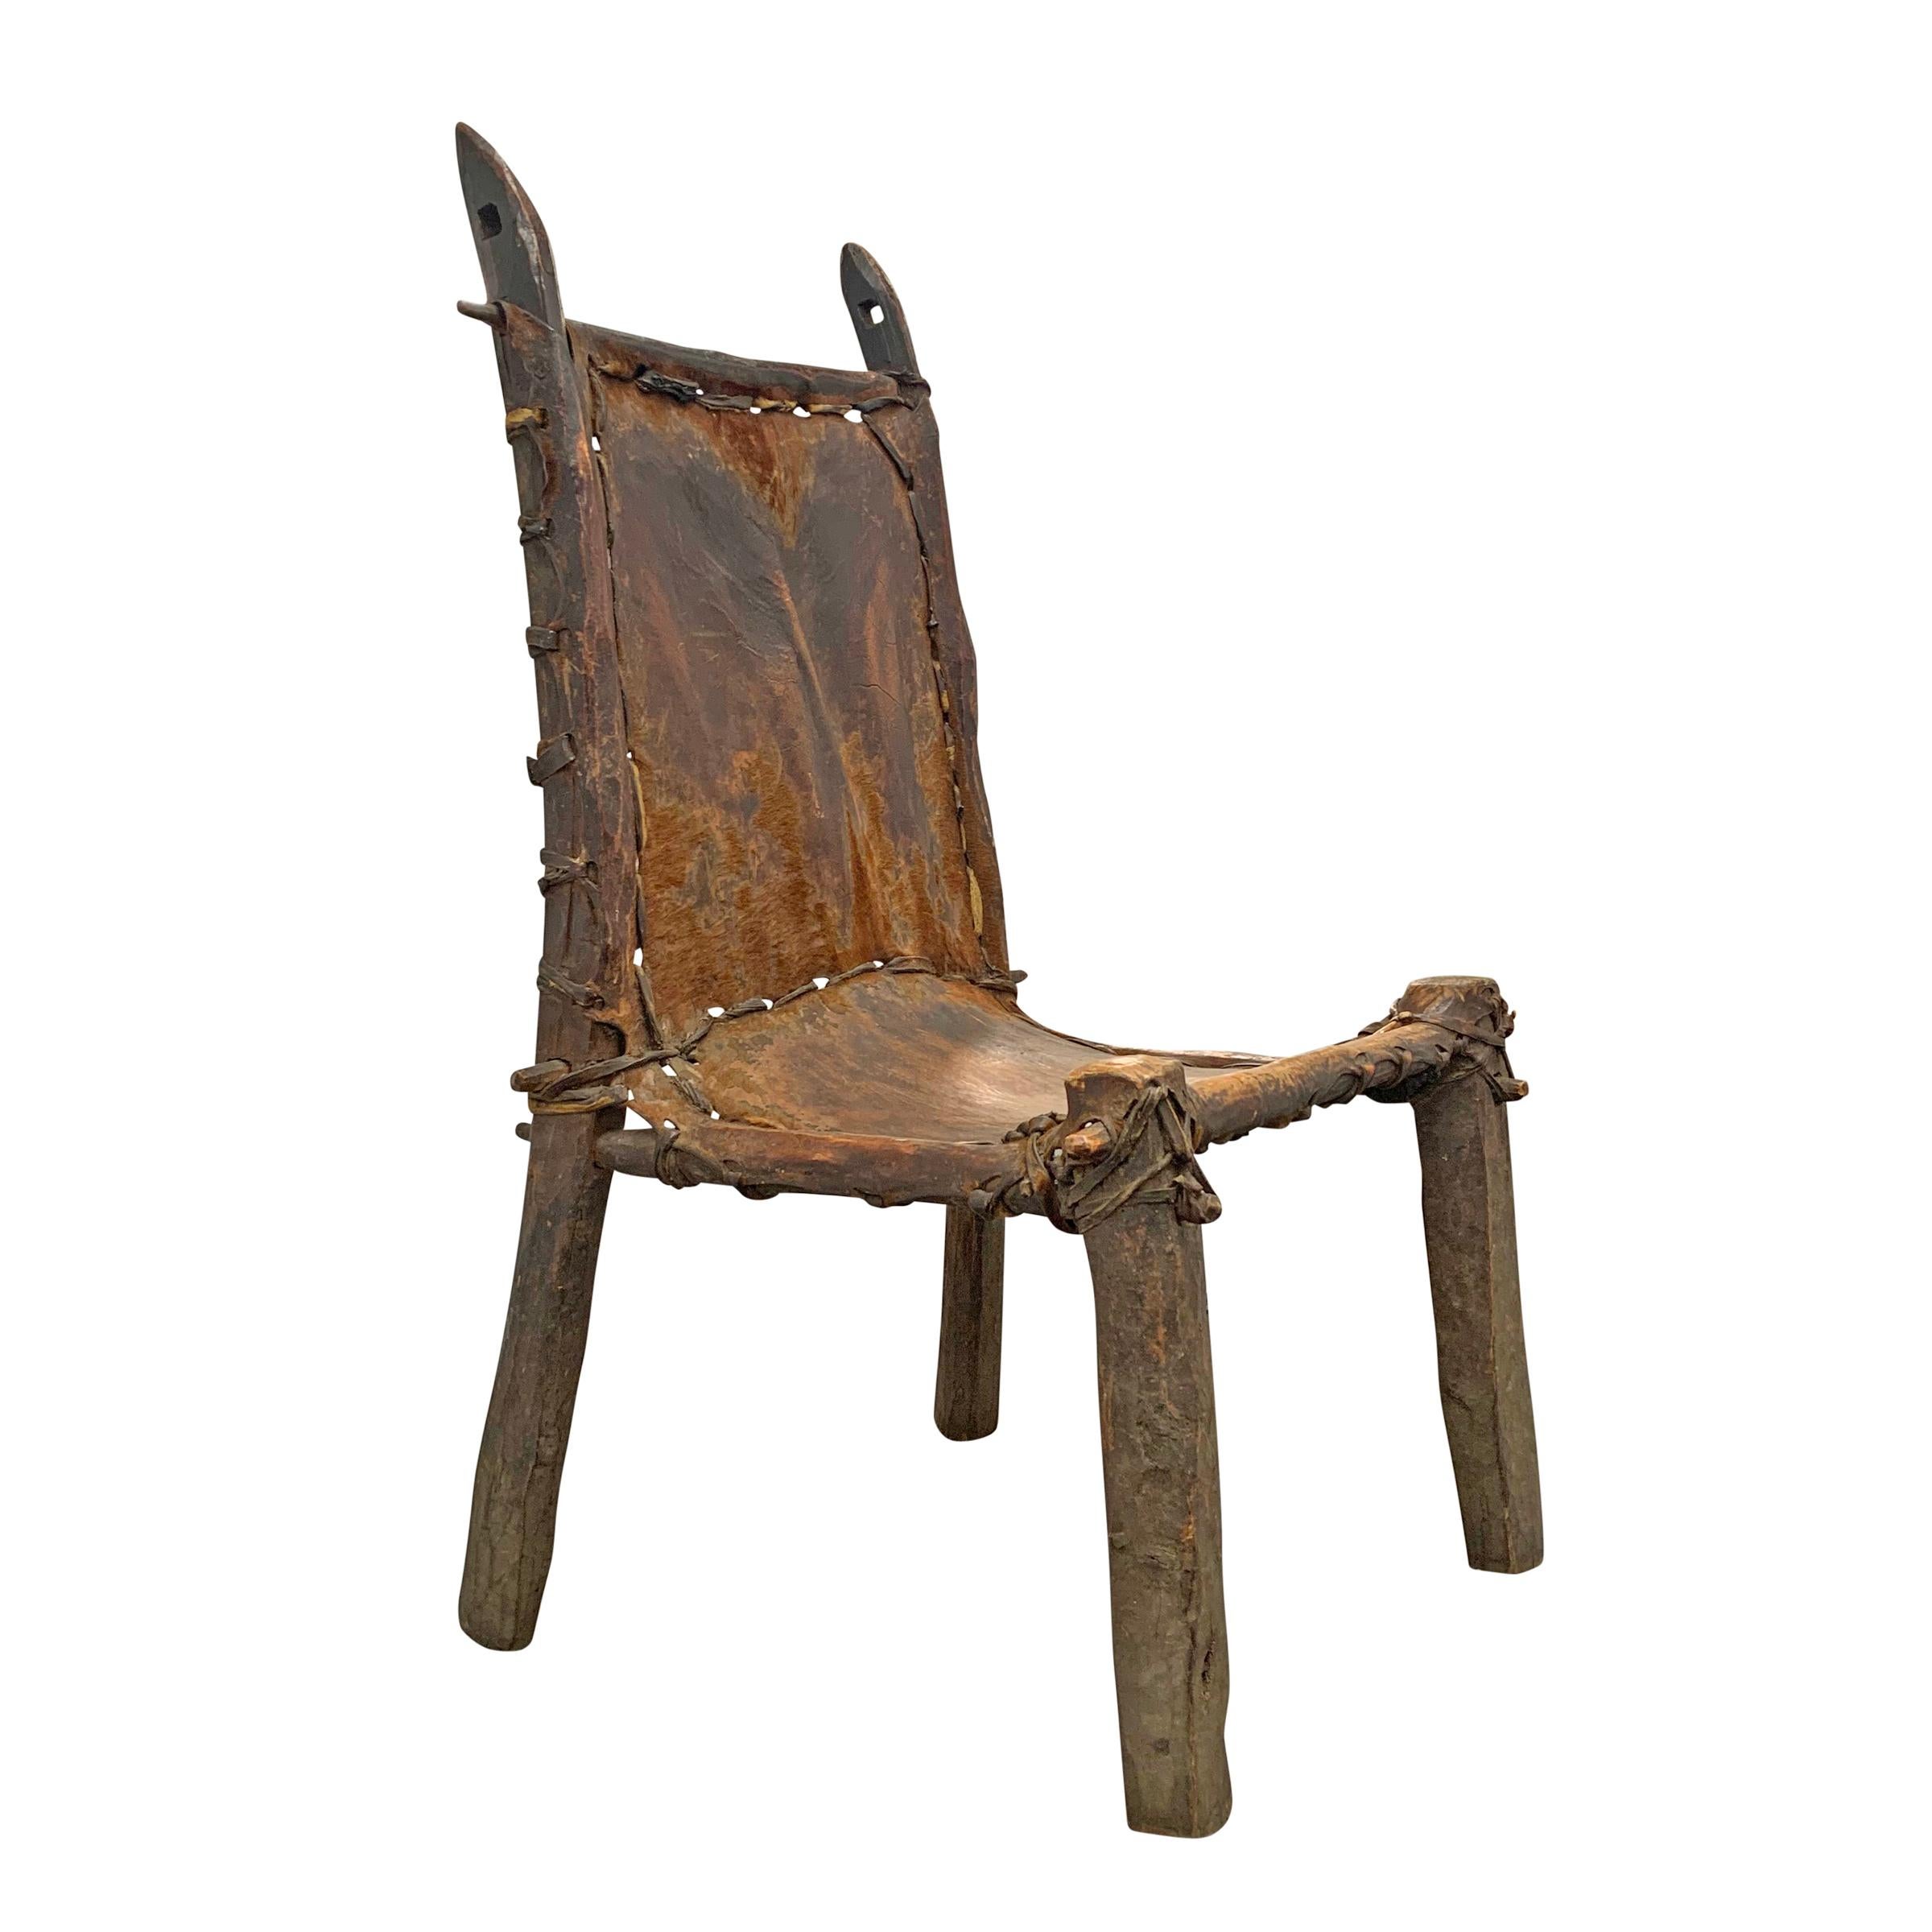 Ein wunderbar skulpturaler äthiopischer Beistellstuhl aus dem frühen 20. Jahrhundert mit einem Sitz und einer Rückenlehne aus Leder, die mit Lederstreifen vernäht sind und über einen primitiven Holzrahmen gespannt sind. Der Stuhl ist funktional,